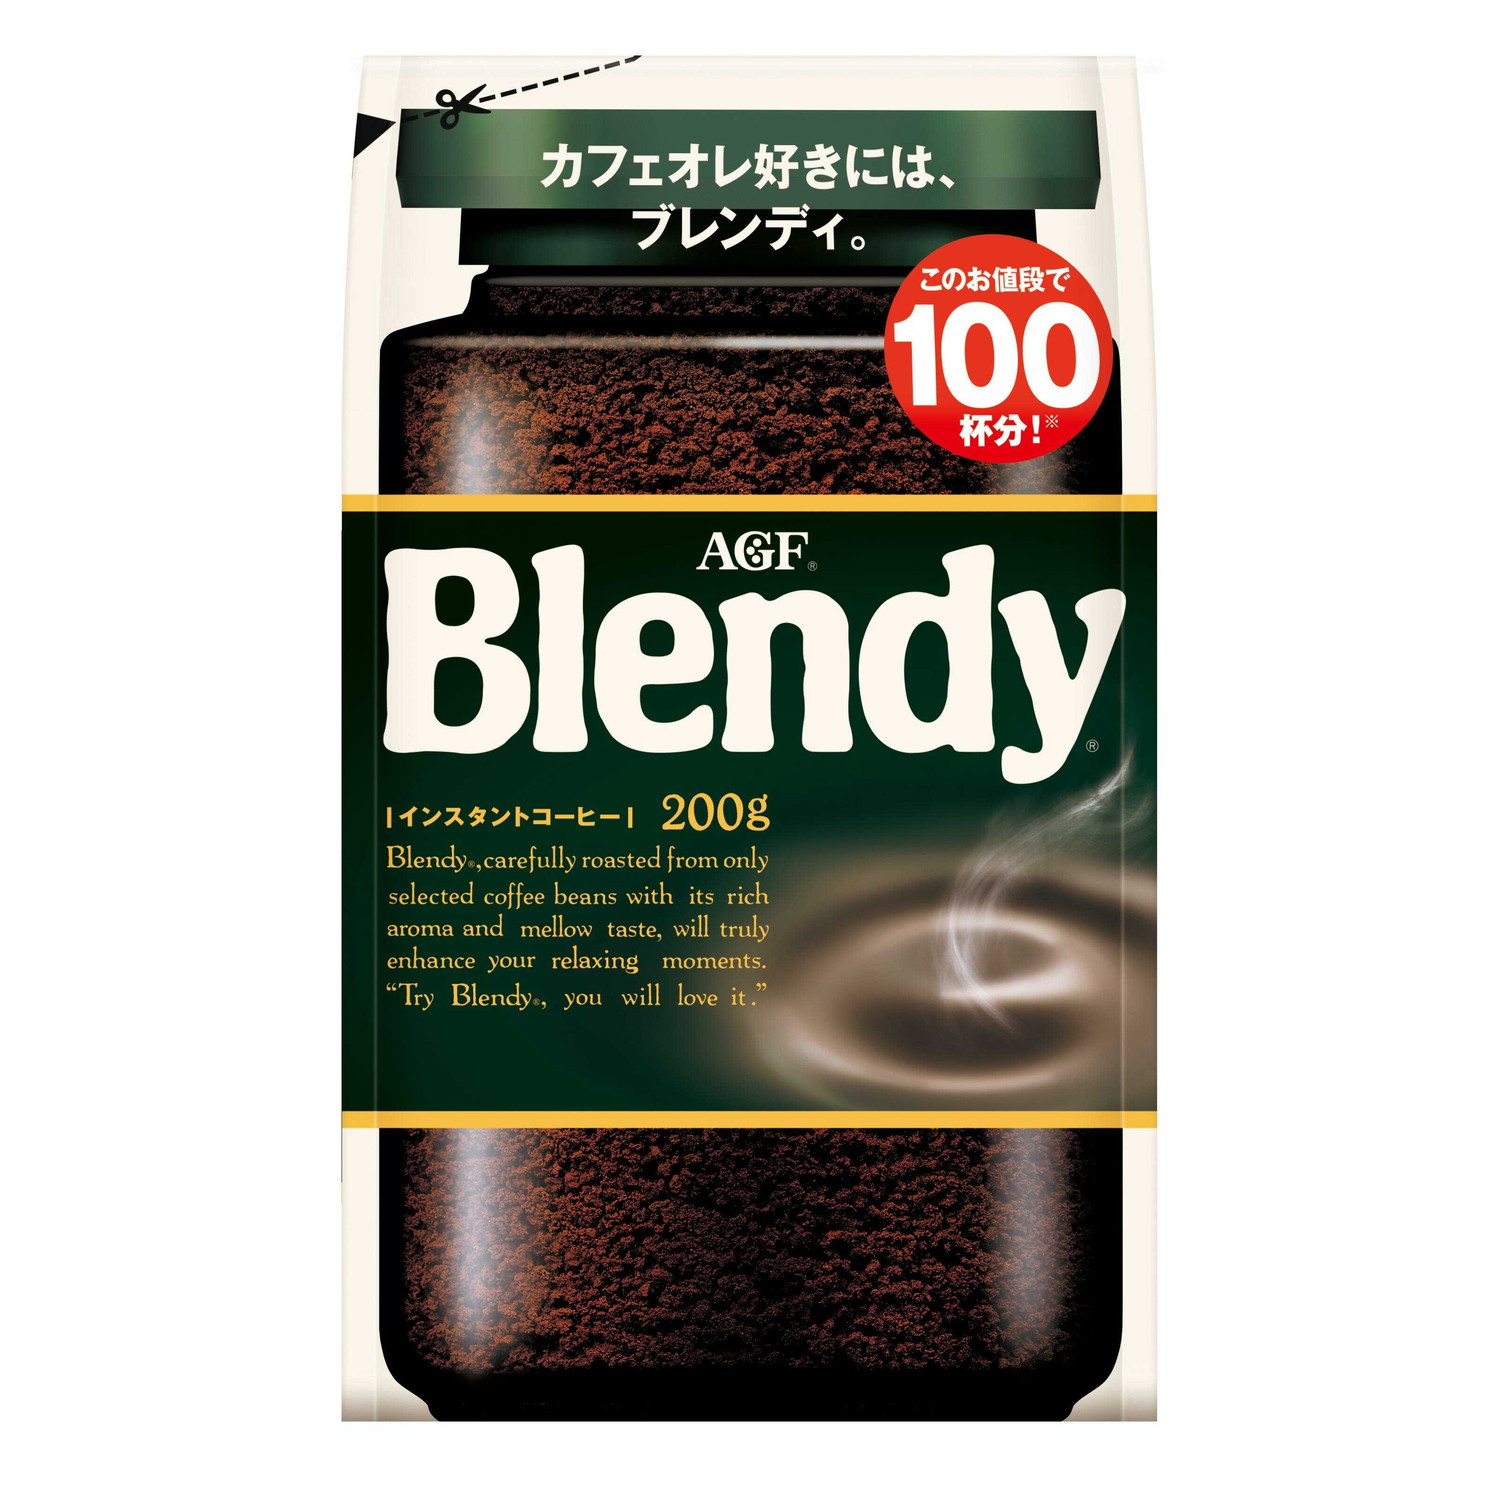 ◆味の素AGF ブレンディ インスタントコーヒー 袋 200g